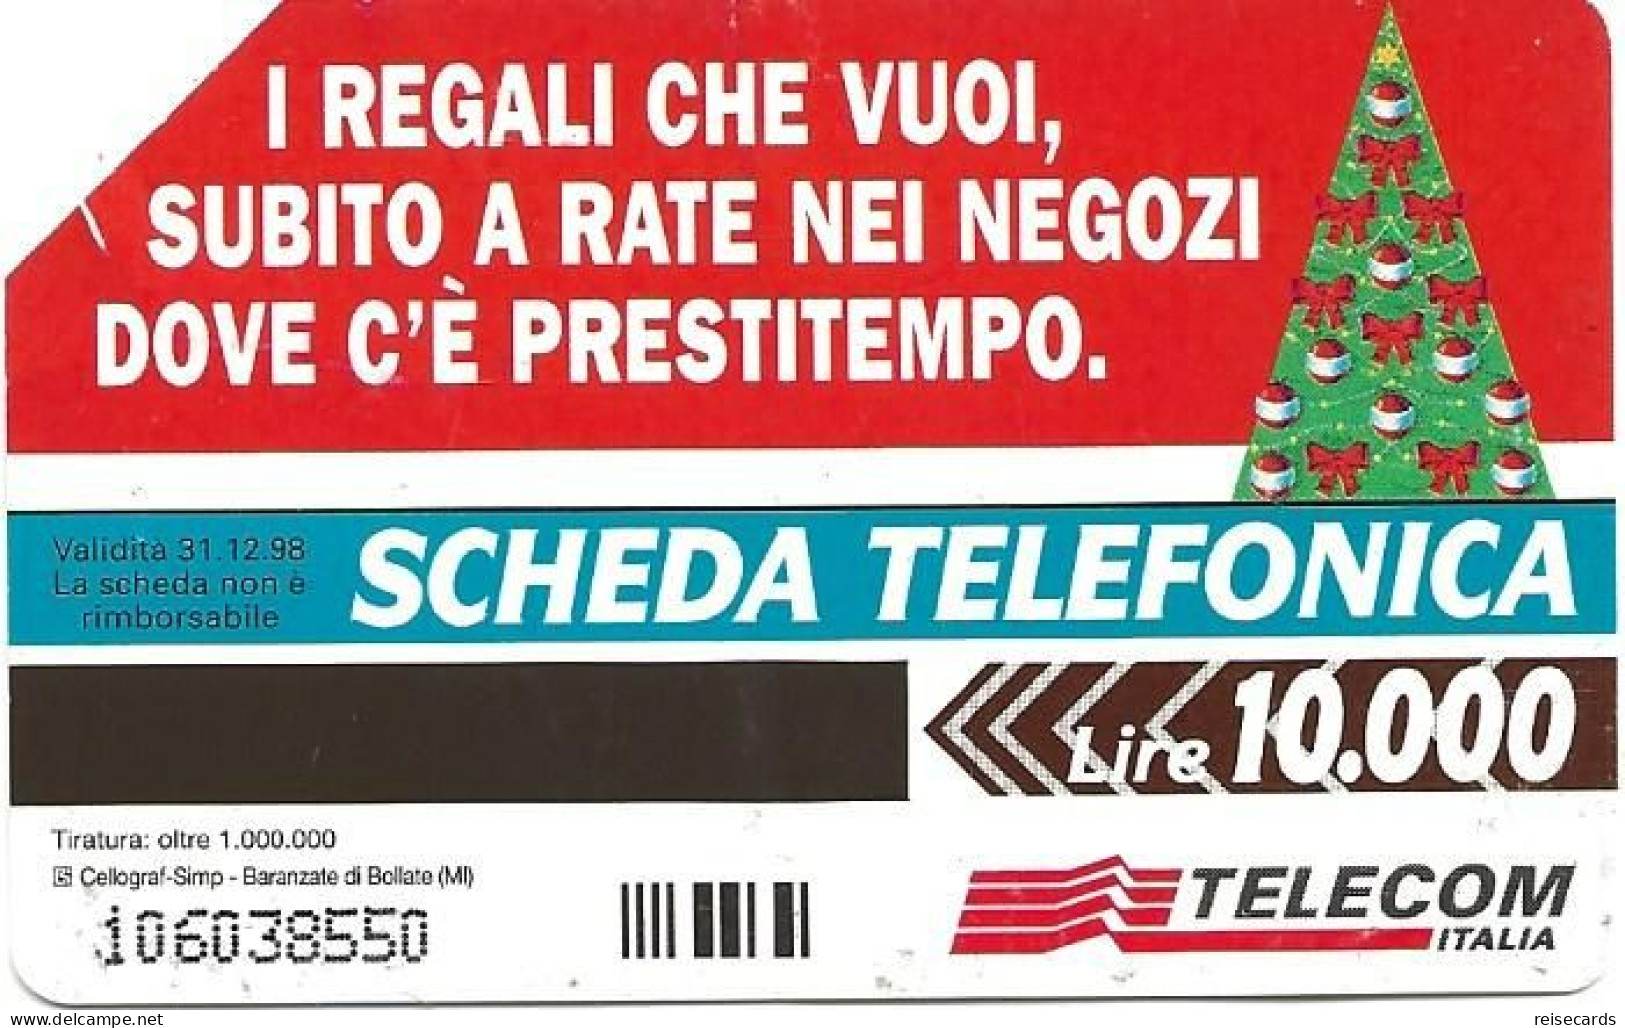 Italy: Telecom Italia - Buon Natale - Public Advertising